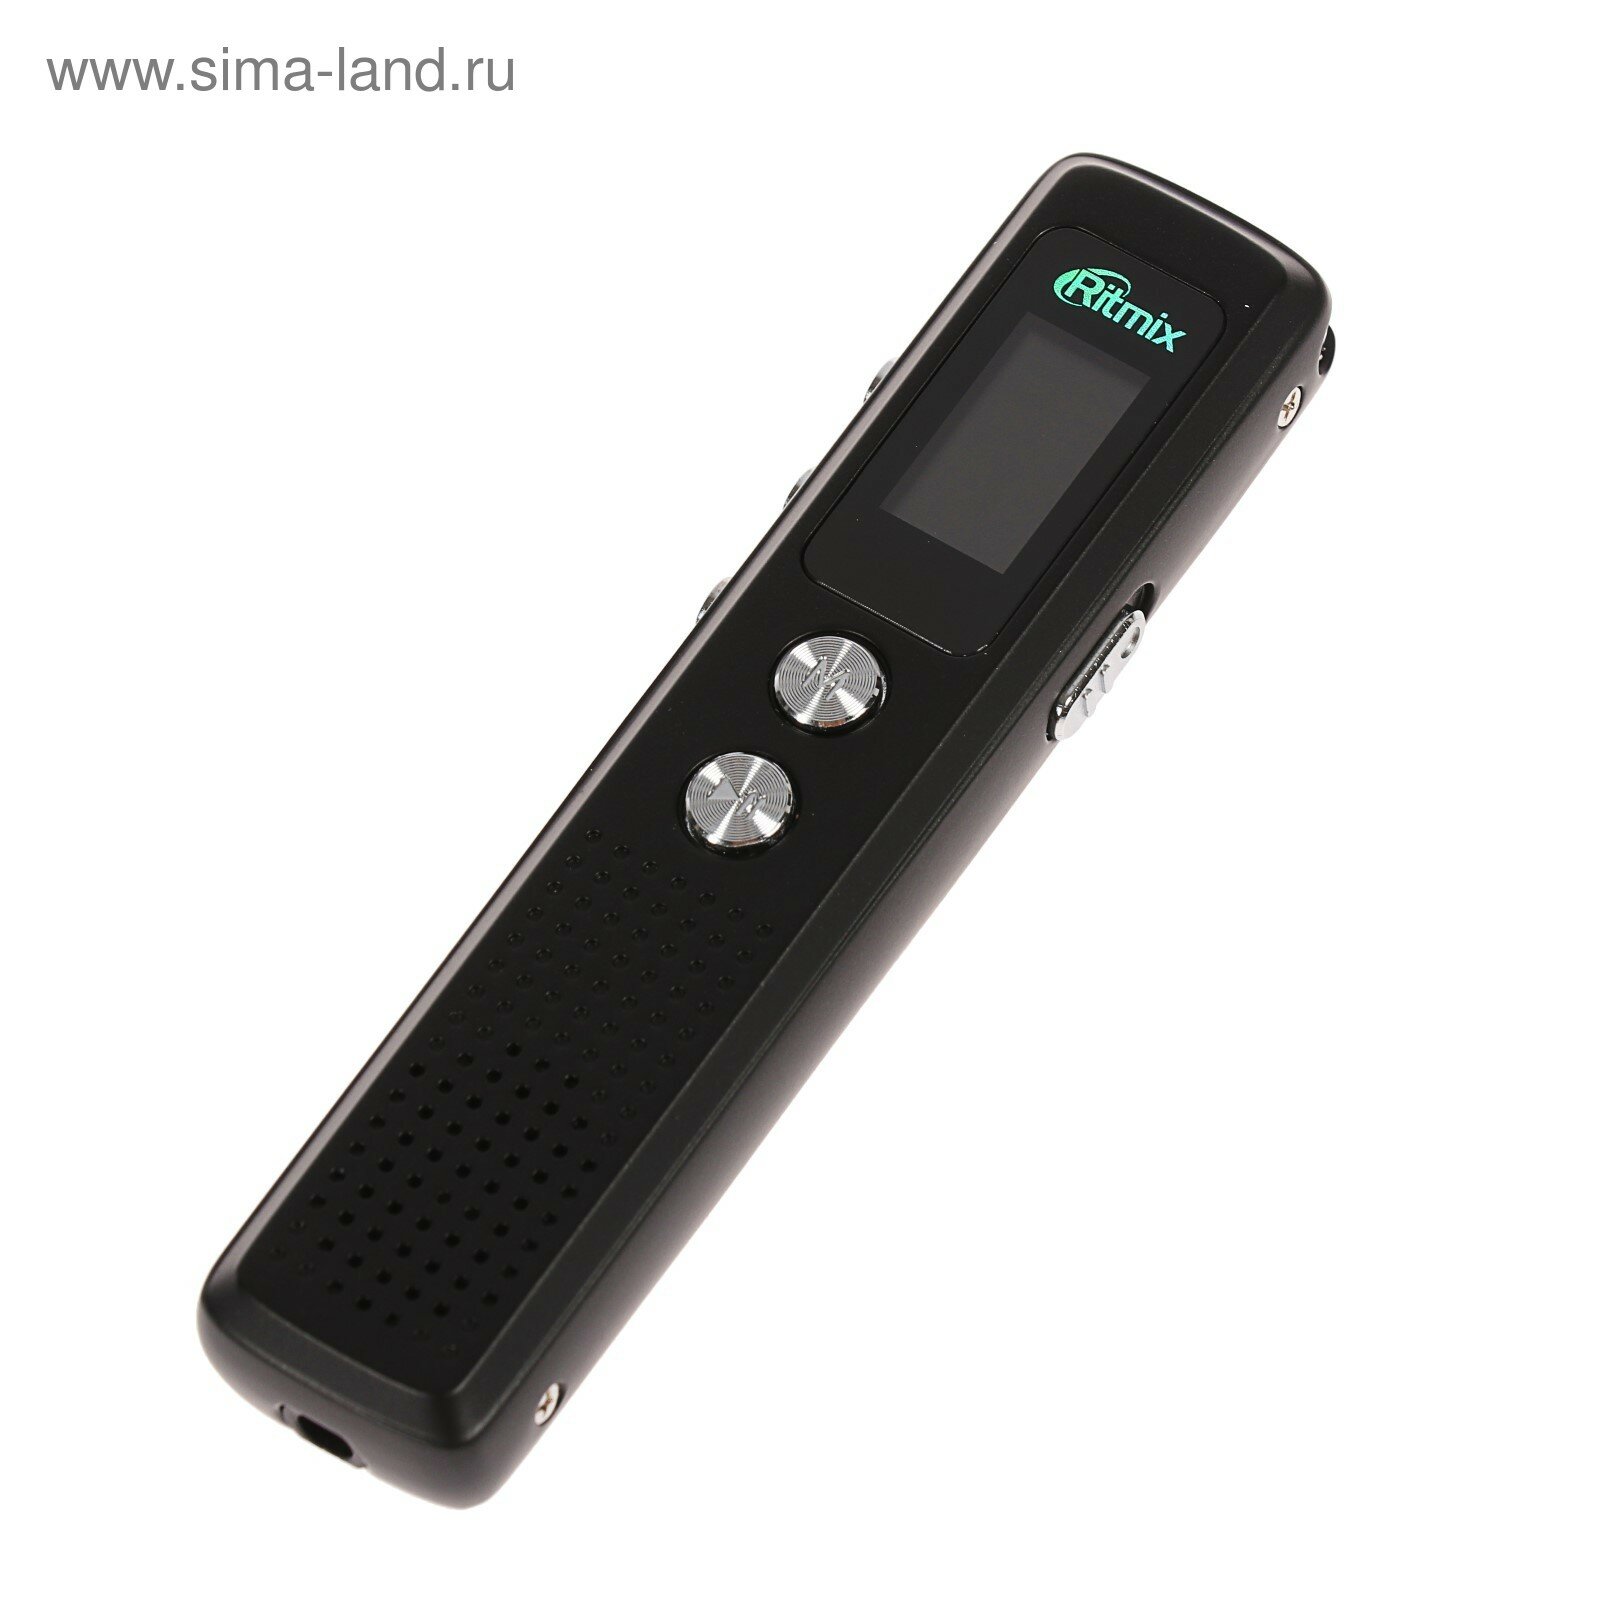 Диктофон RR-120 8GB MP3/WAV дисплей металл корпус черный